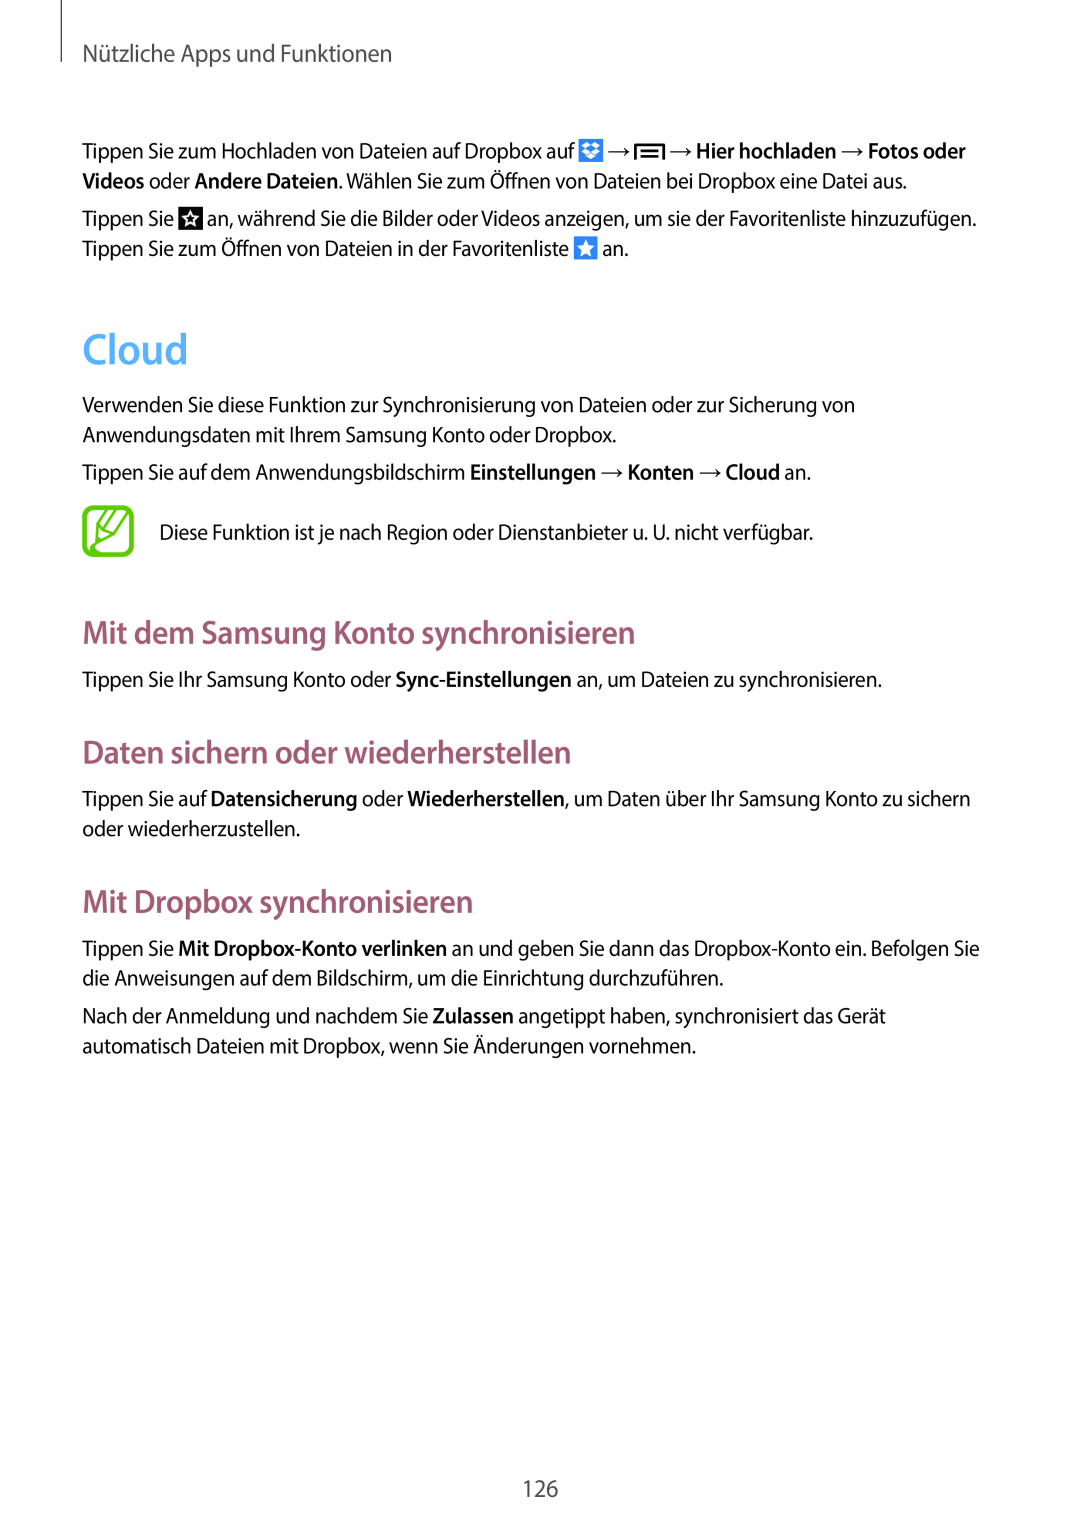 Samsung SM-C1010ZWAEUR, SM-C1010ZWAXEO Cloud, Mit dem Samsung Konto synchronisieren, Daten sichern oder wiederherstellen 